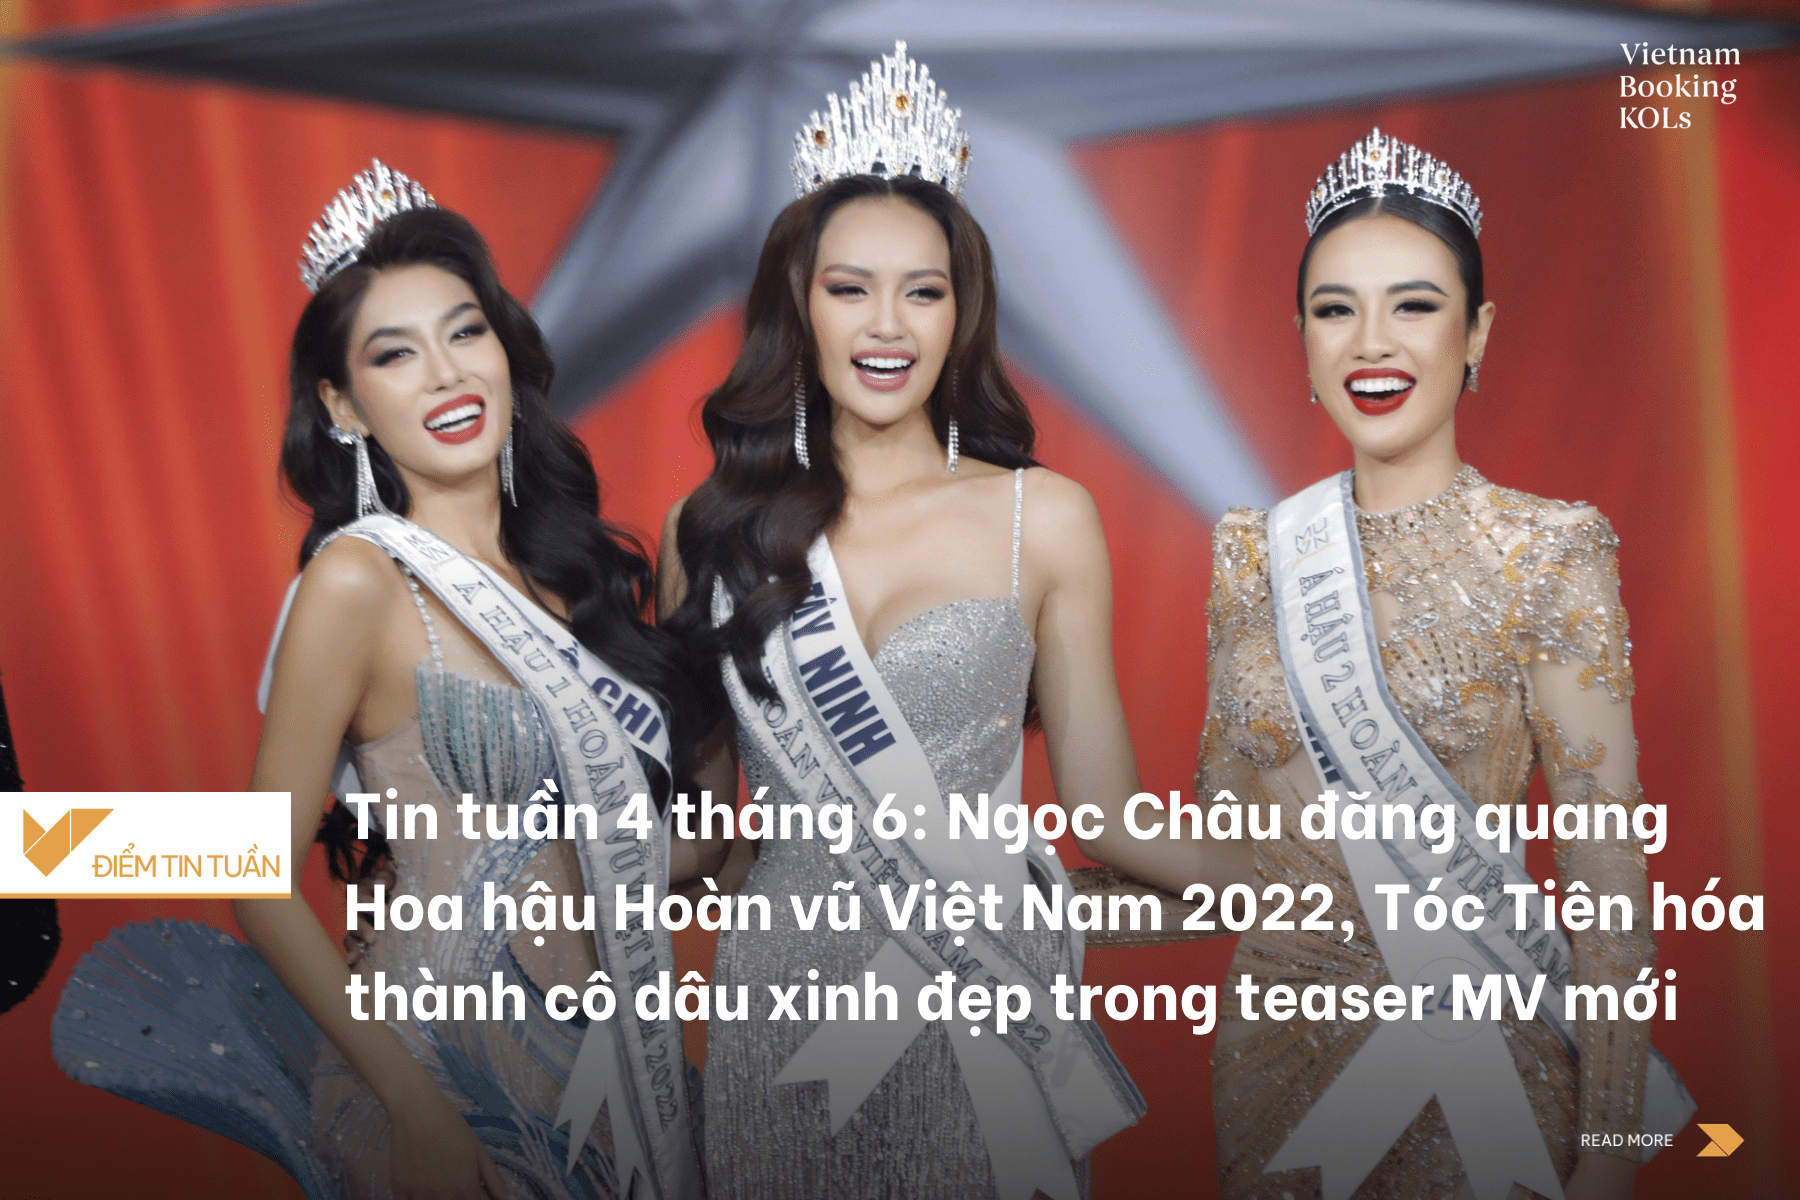 Tin tuần 4 tháng 6: Ngọc Châu đăng quang Hoa hậu Hoàn vũ Việt Nam 2022, Tóc Tiên hóa thành cô dâu xinh đẹp trong teaser MV mới